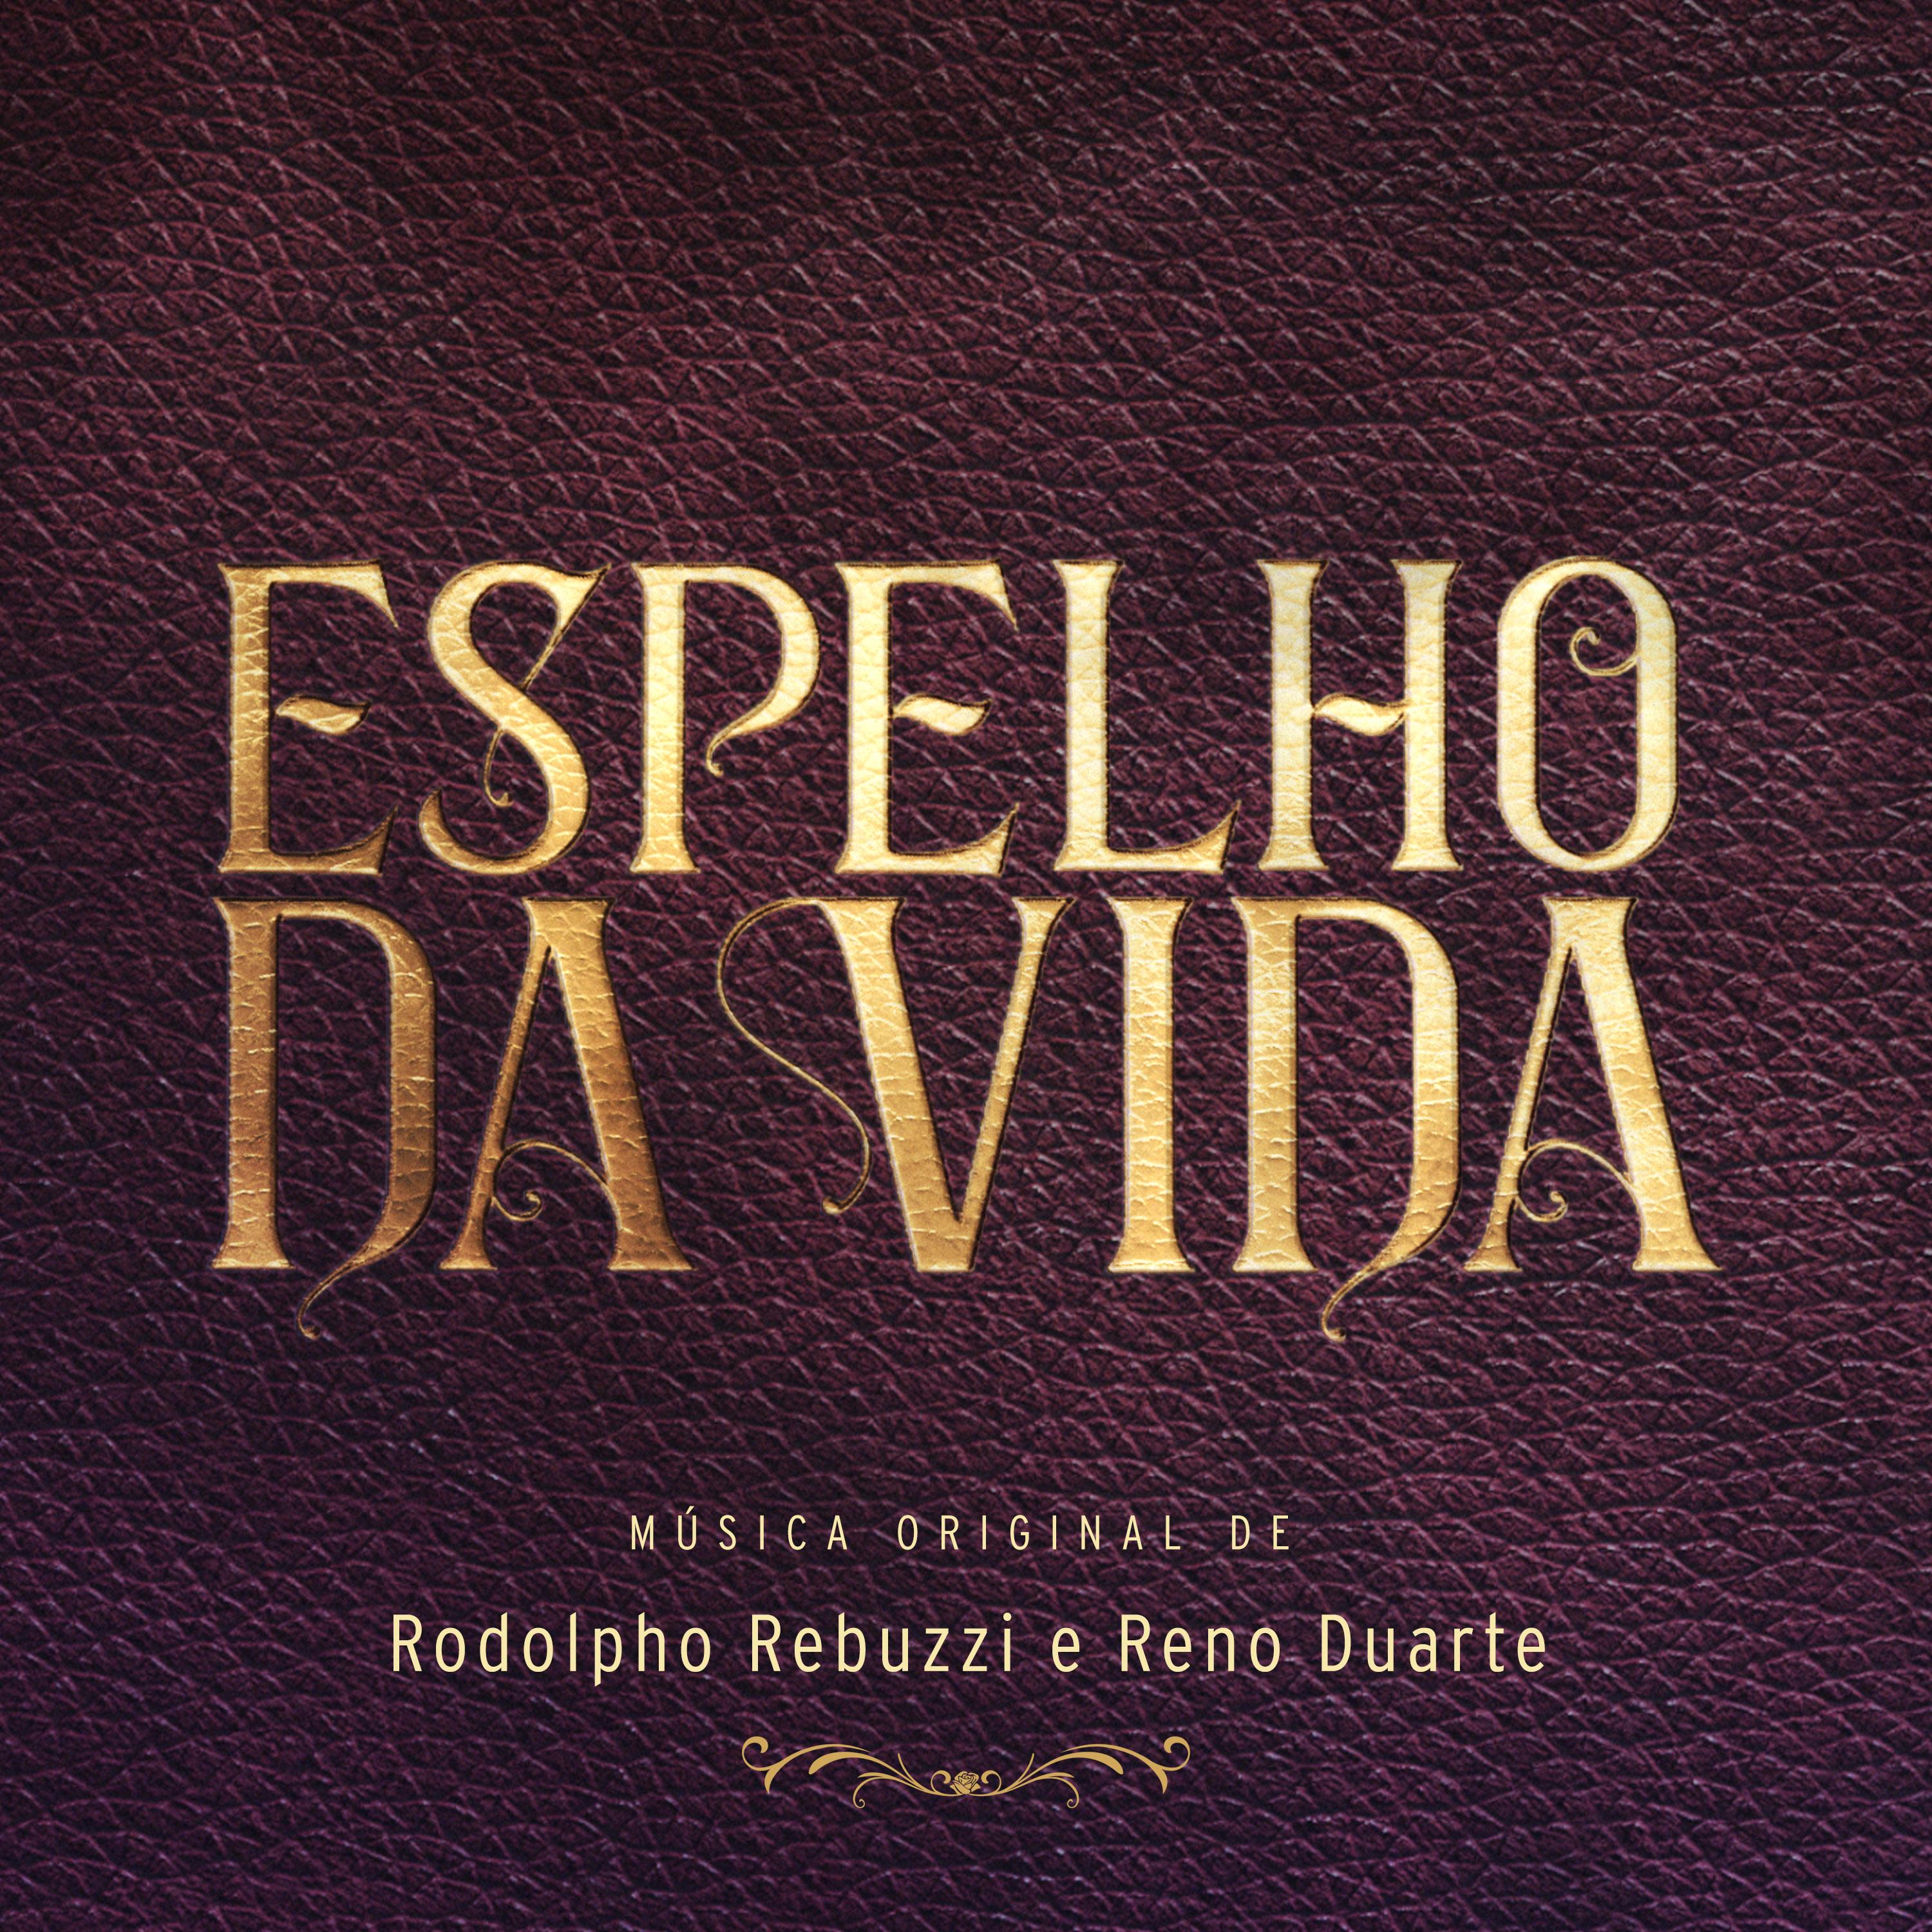 Espelho da Vida - Música Original de Rodolpho Rebuzzi e Reno Duarte